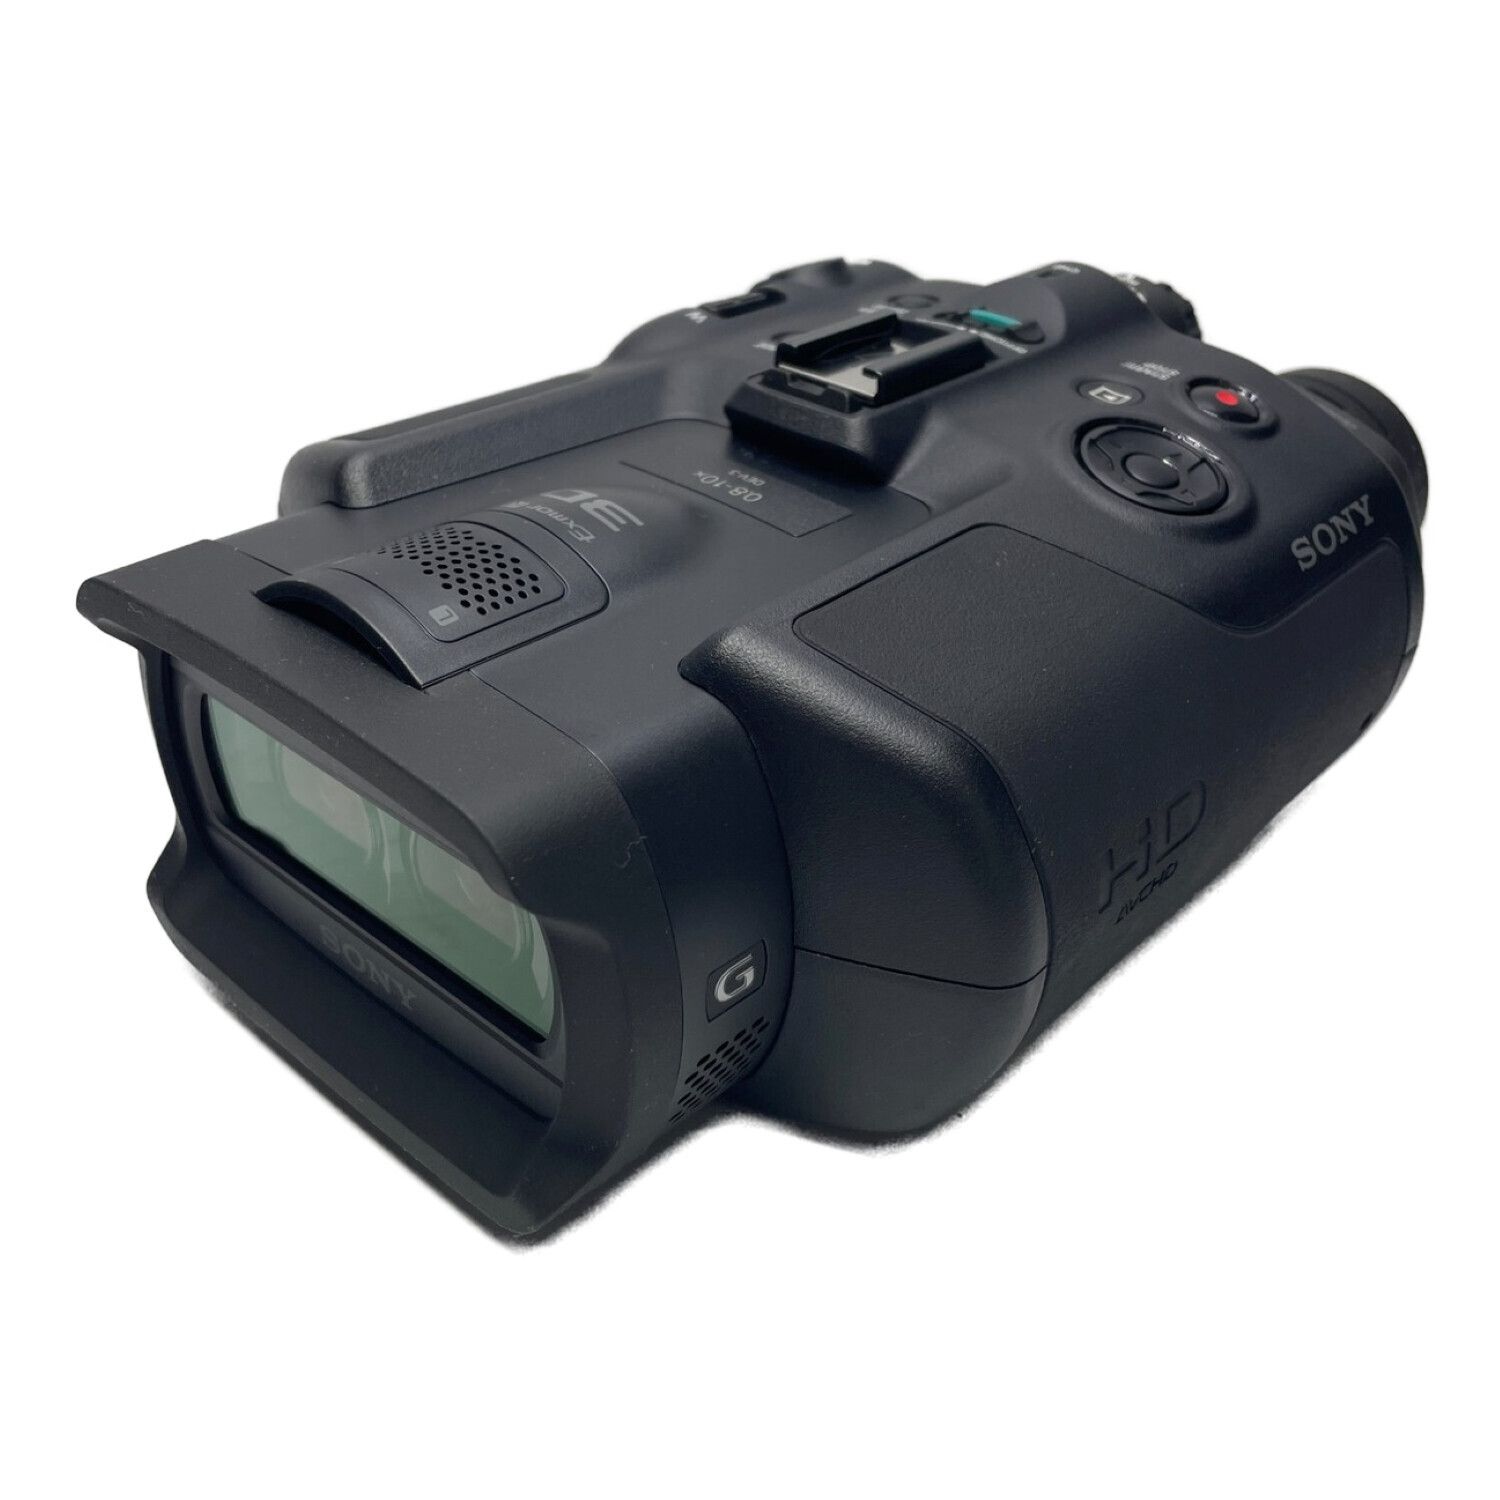 SONY (ソニー) HDデジタル録画機能付き双眼鏡 DEV-3 